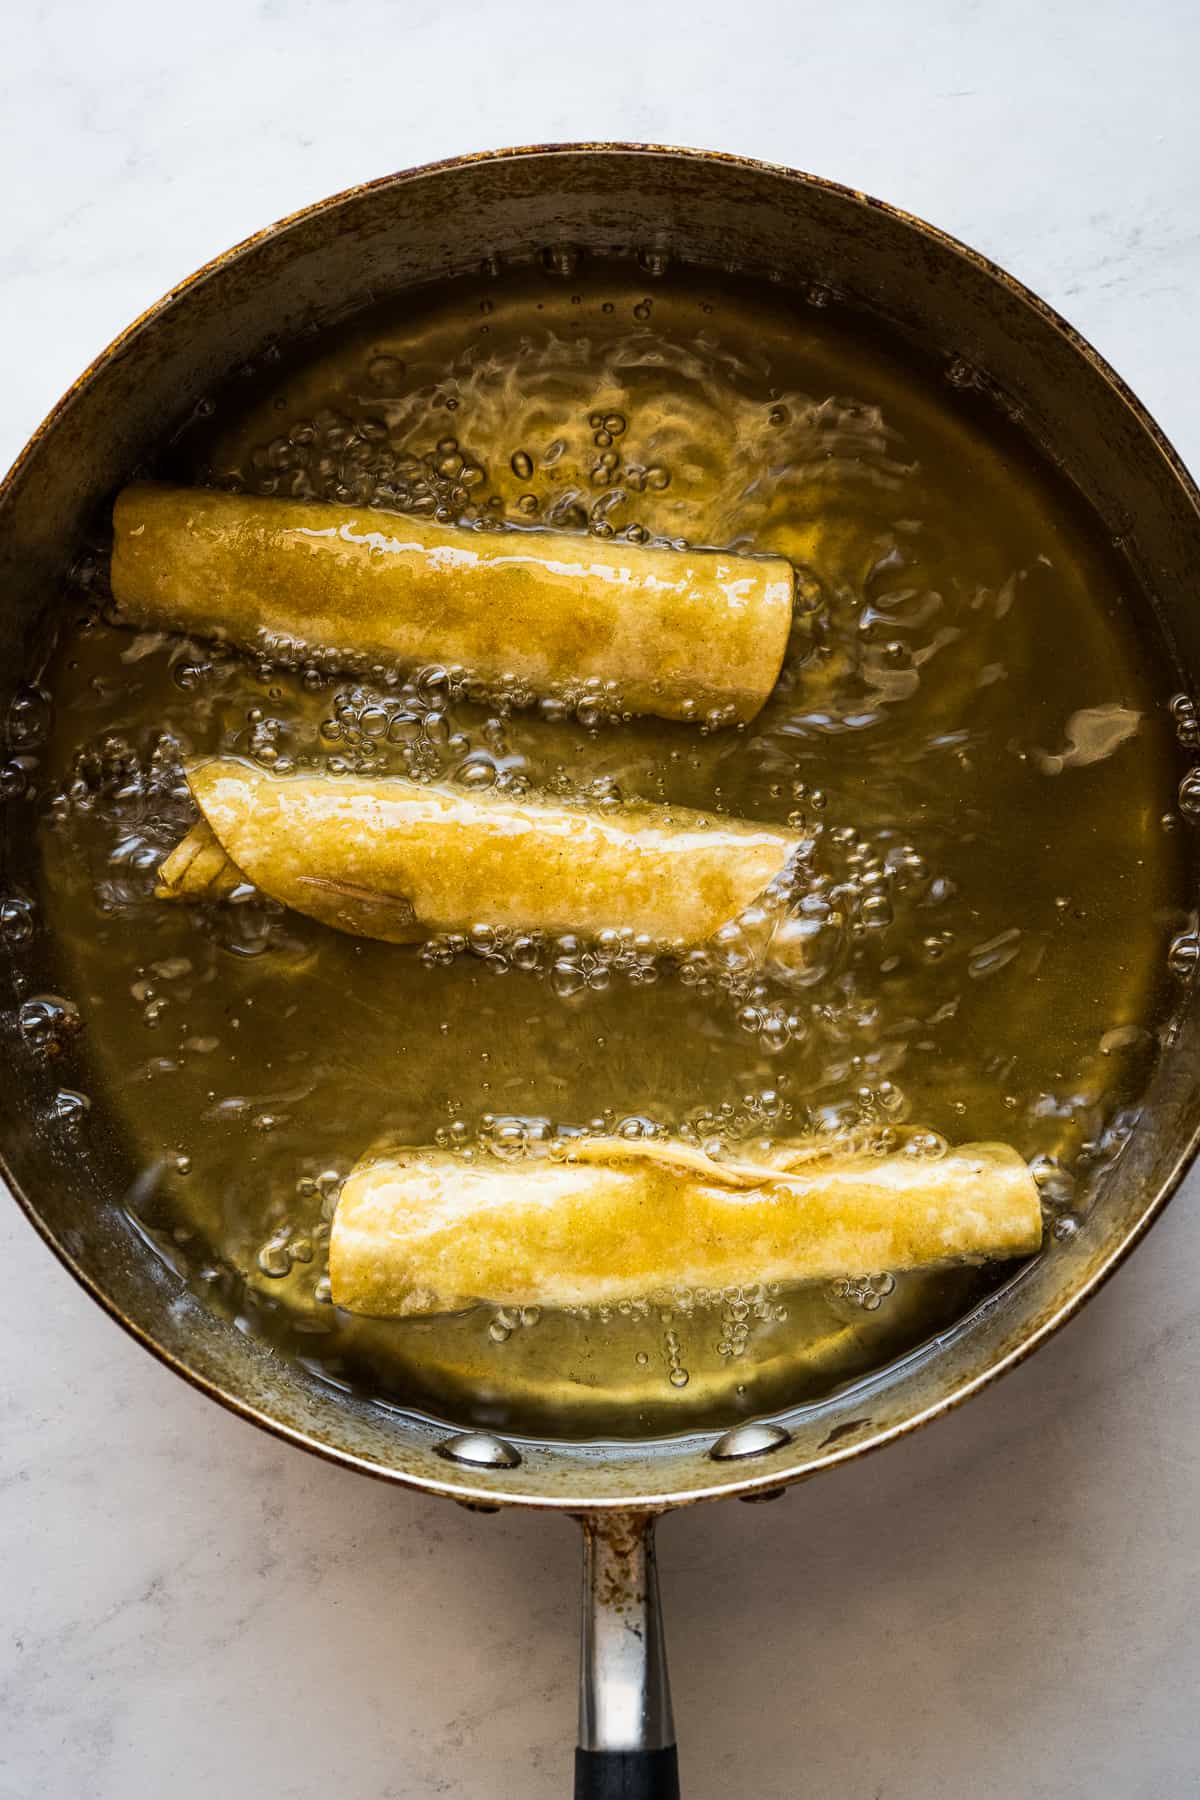 Flautas being fried in oil.